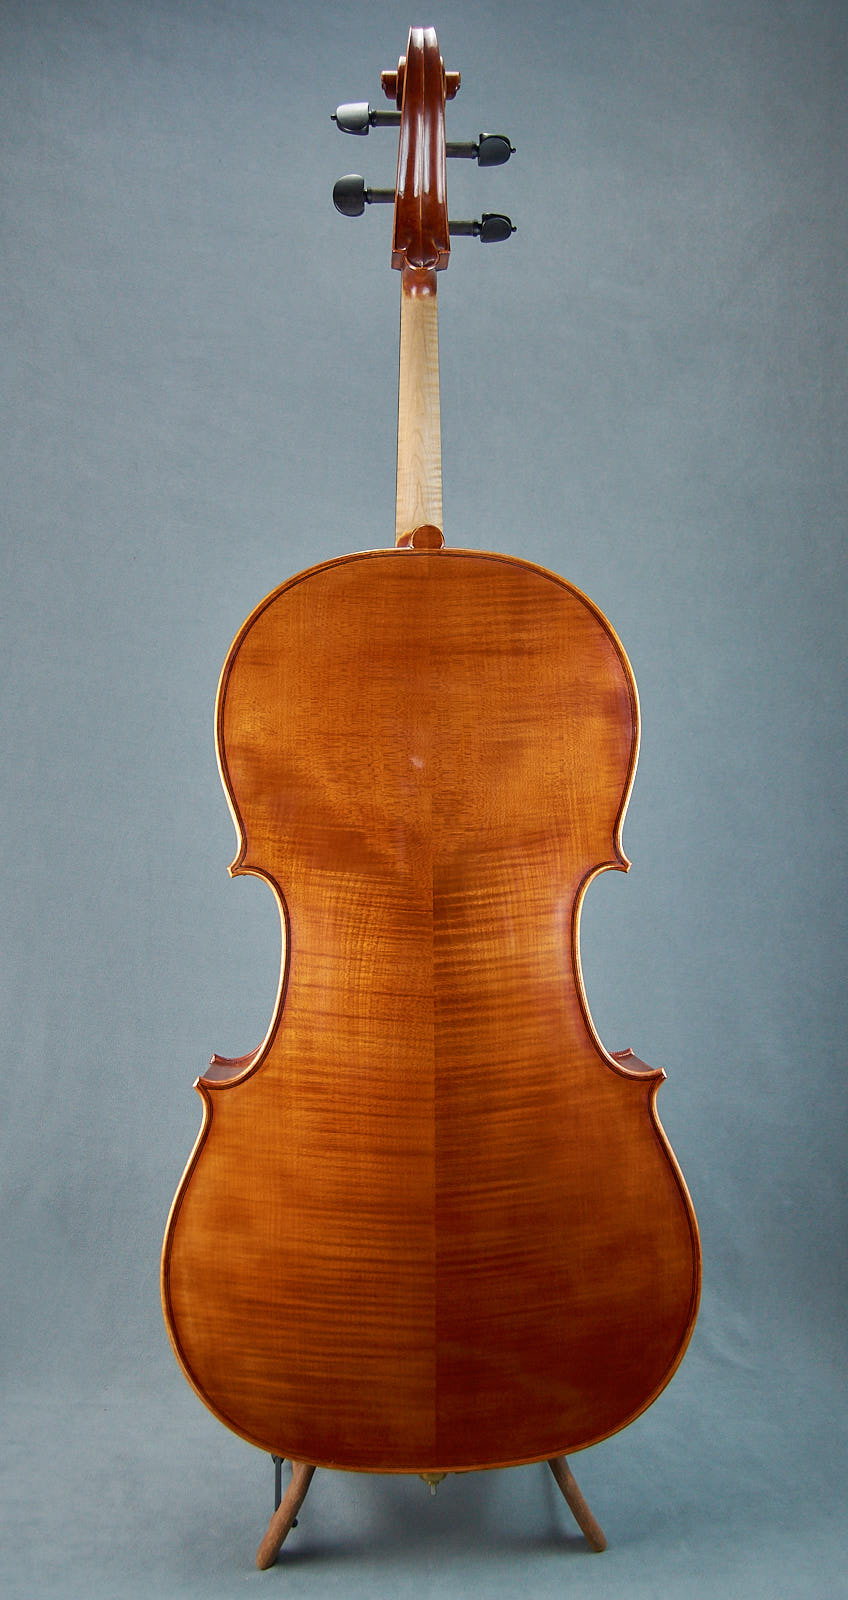 Brazenose Cello Terra back handmade